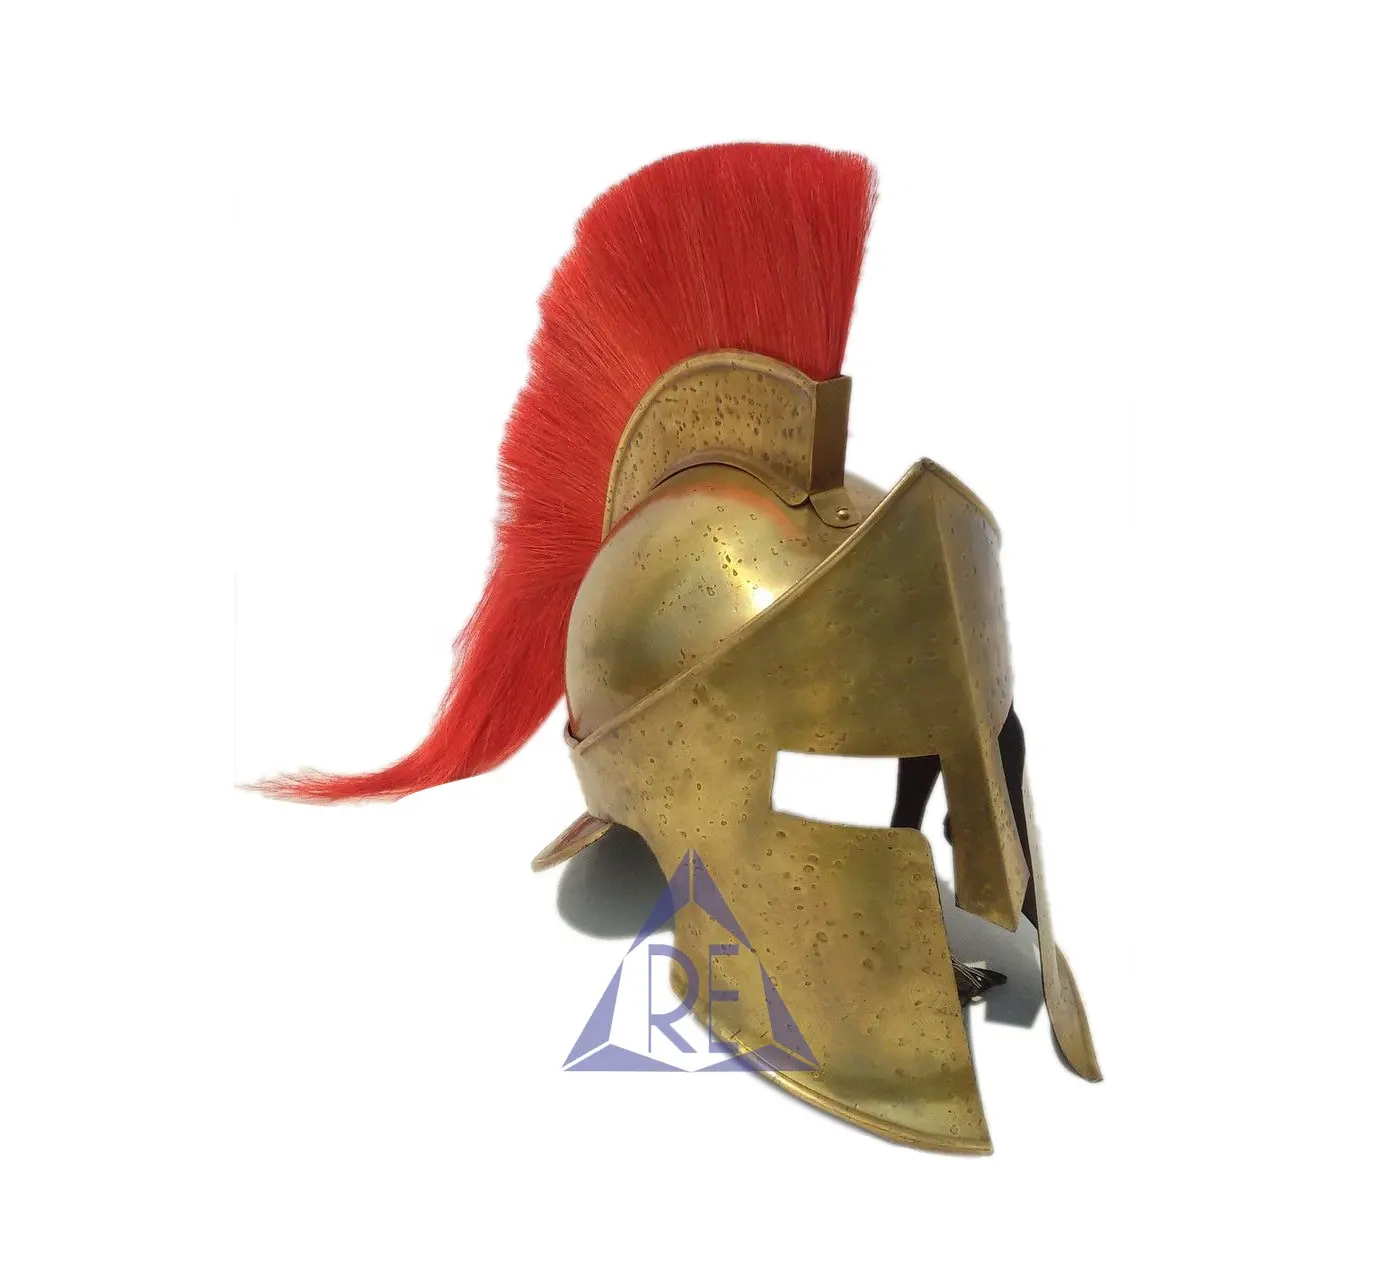 Mittelalter licher spartanischer König Leonidas Griechischer Rüstungs helm mit rotem Feder kostüm Rollenspiel Sammlerstück Rollenspiel Tragbarer Helm